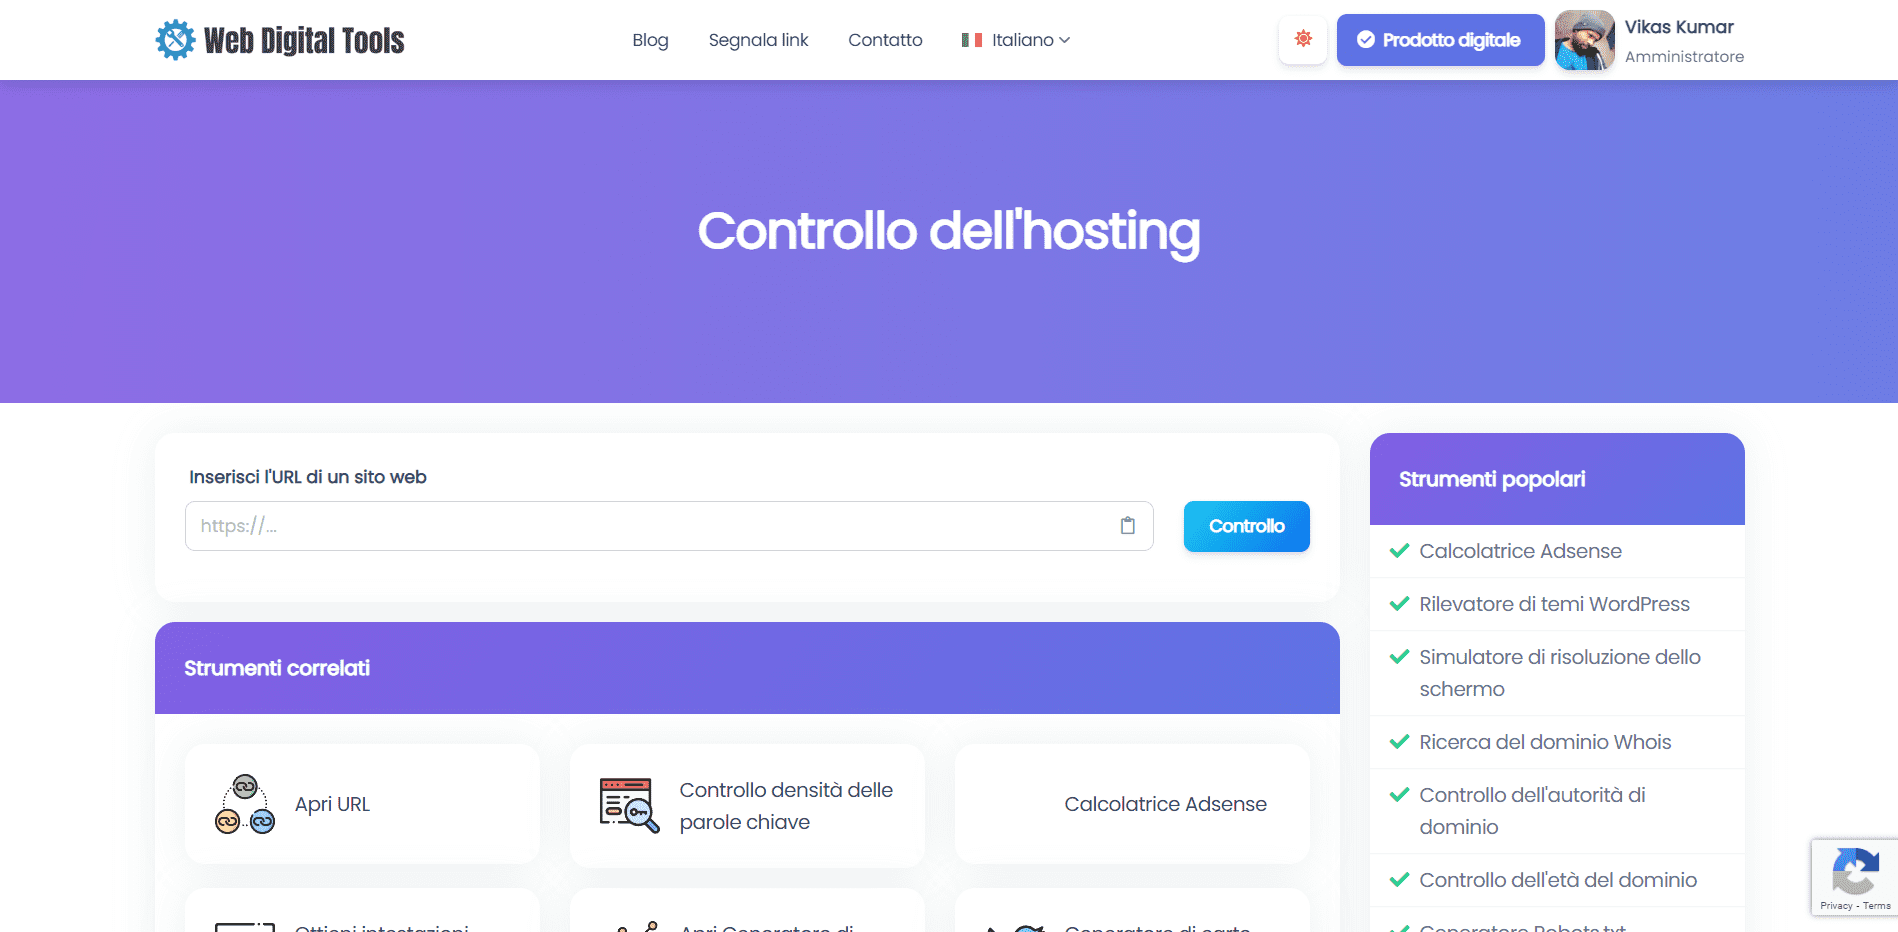 Controllo dell'hosting